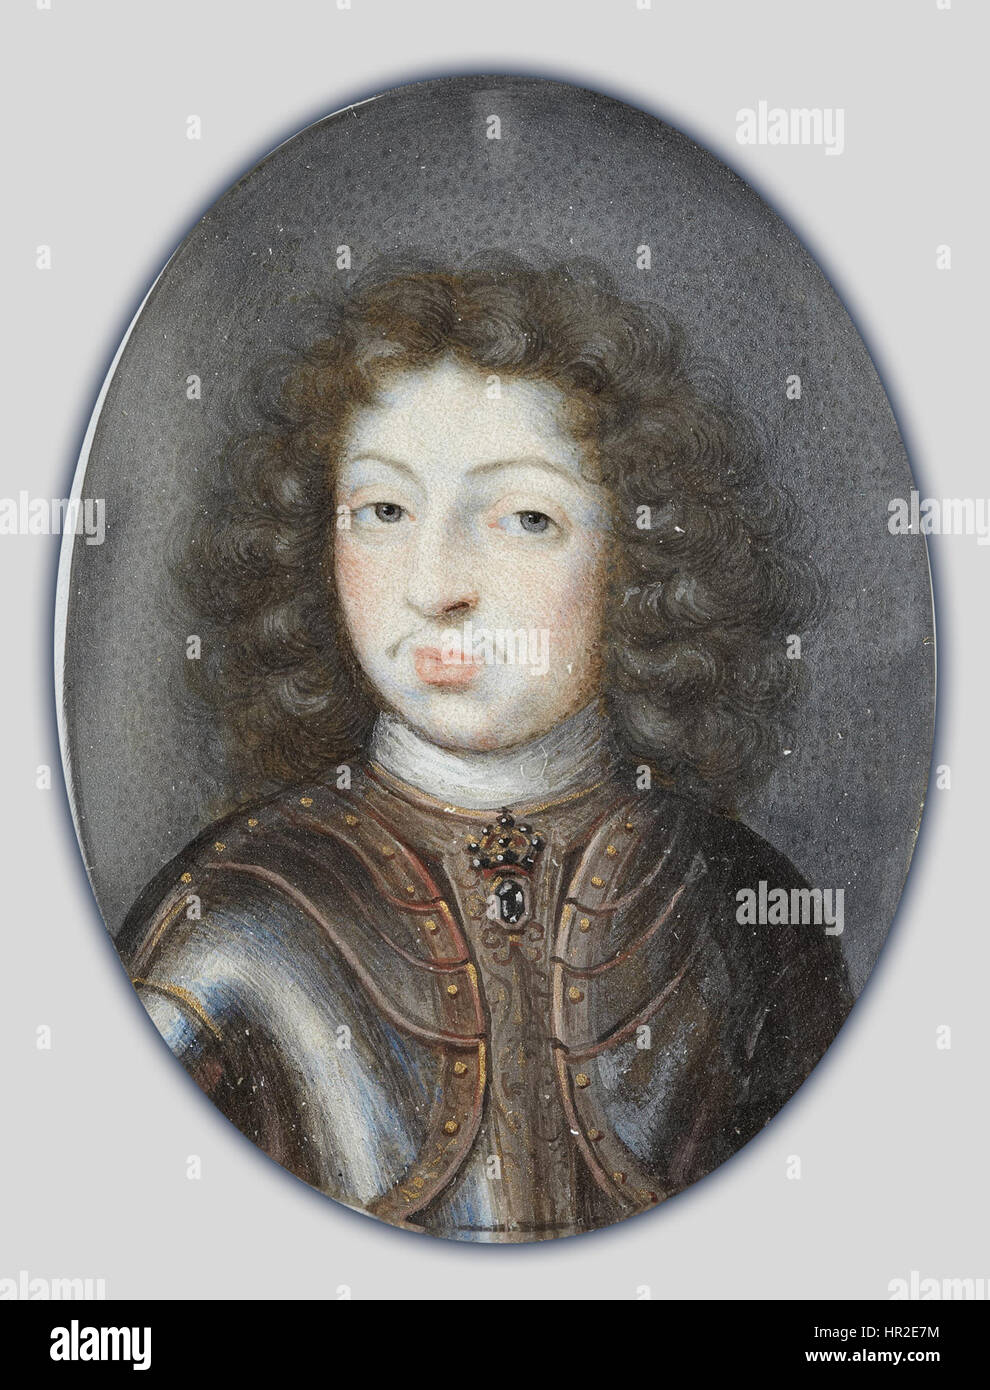 Pierre Signac - Miniatura retrato de Carlos XI, Rey de Suecia 1660-1697 - Proyecto de arte de Google Foto de stock